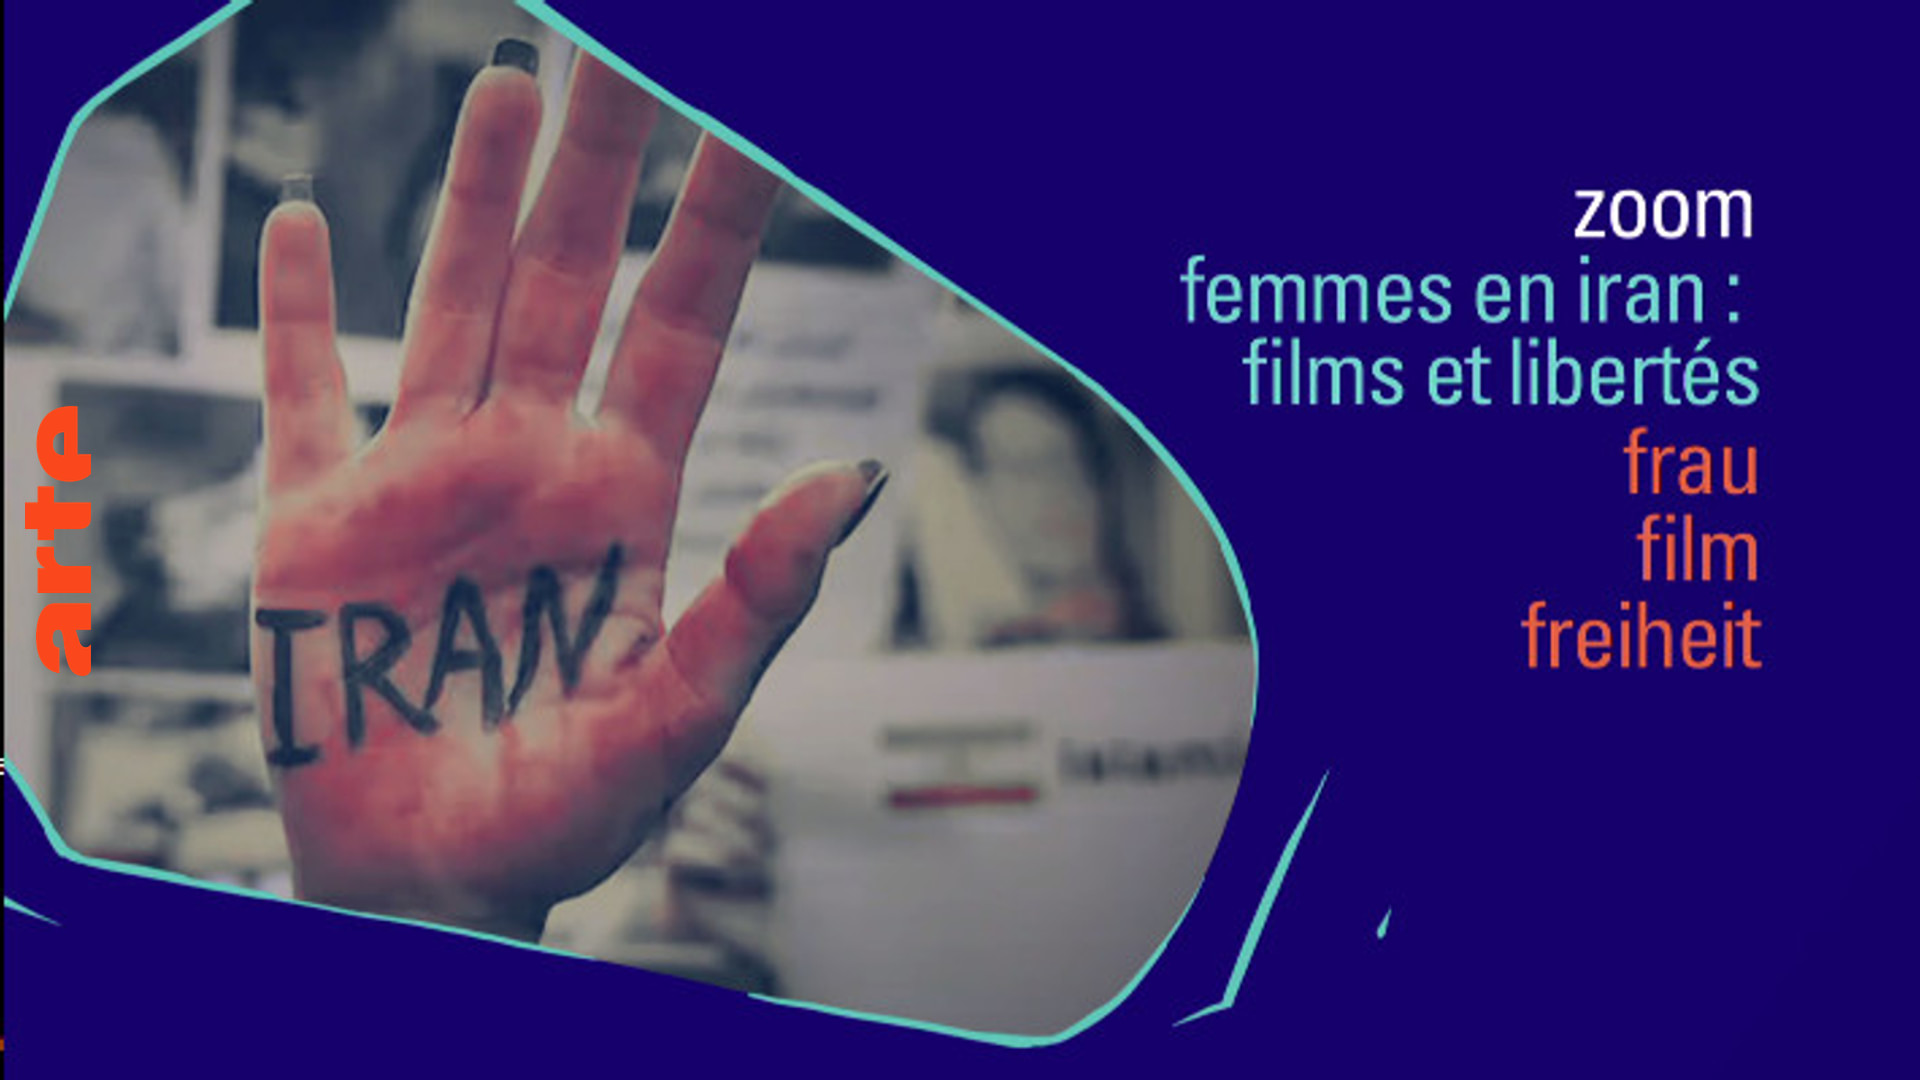 Zoom: Frau - Film - Freiheit